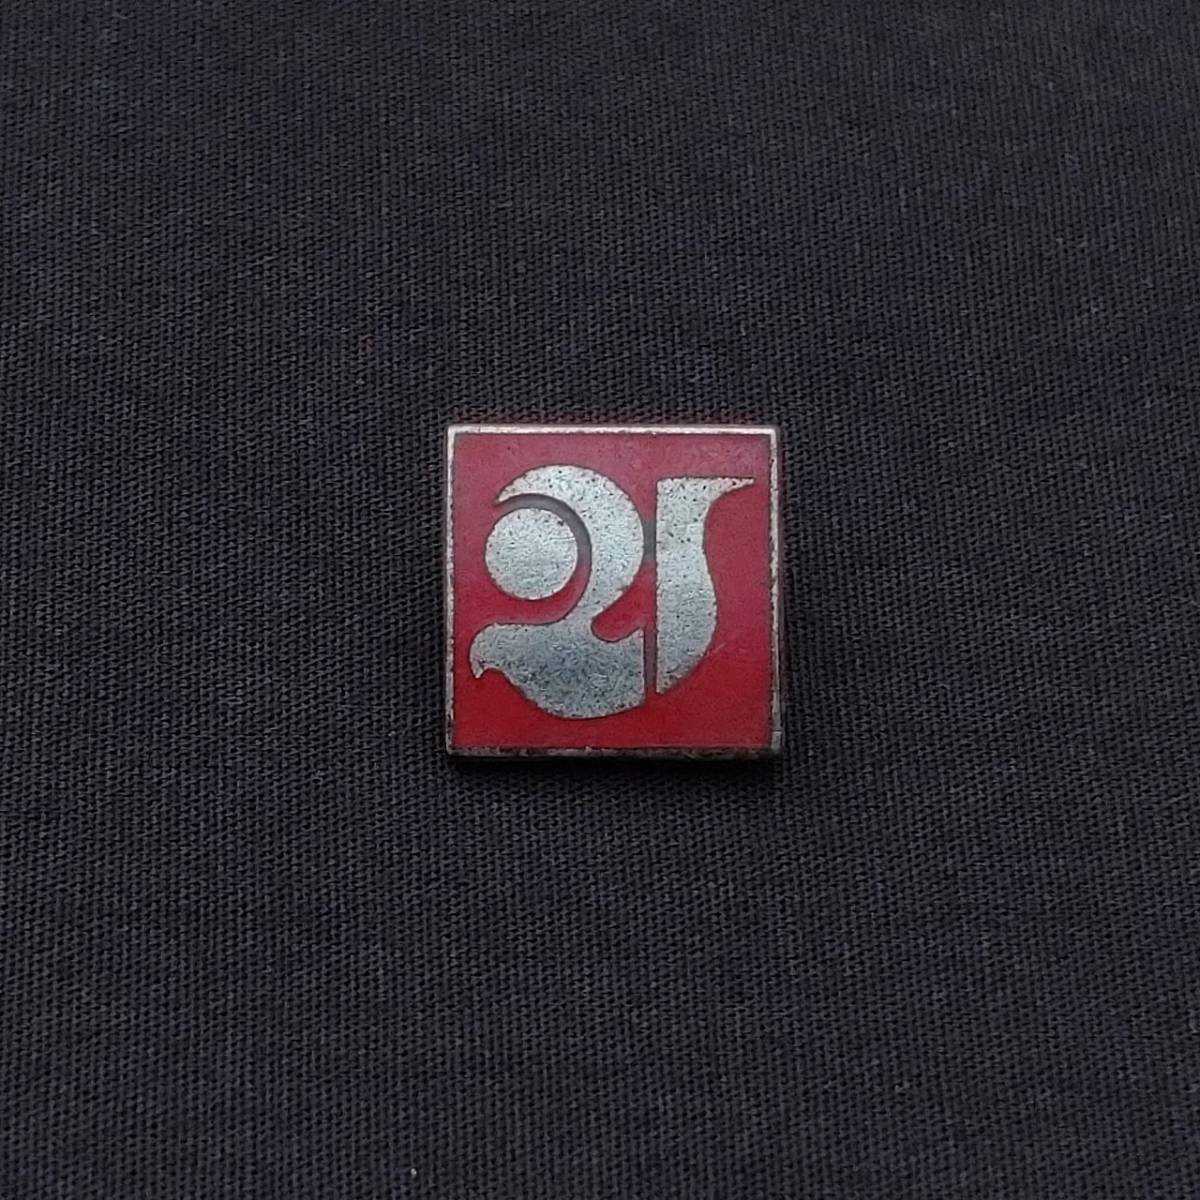 徽章 胸章 バッジ 被爆30周年 第21回世界大会 日本原水協 赤 四角形 古物 昭和レトロ　【4411】_画像1